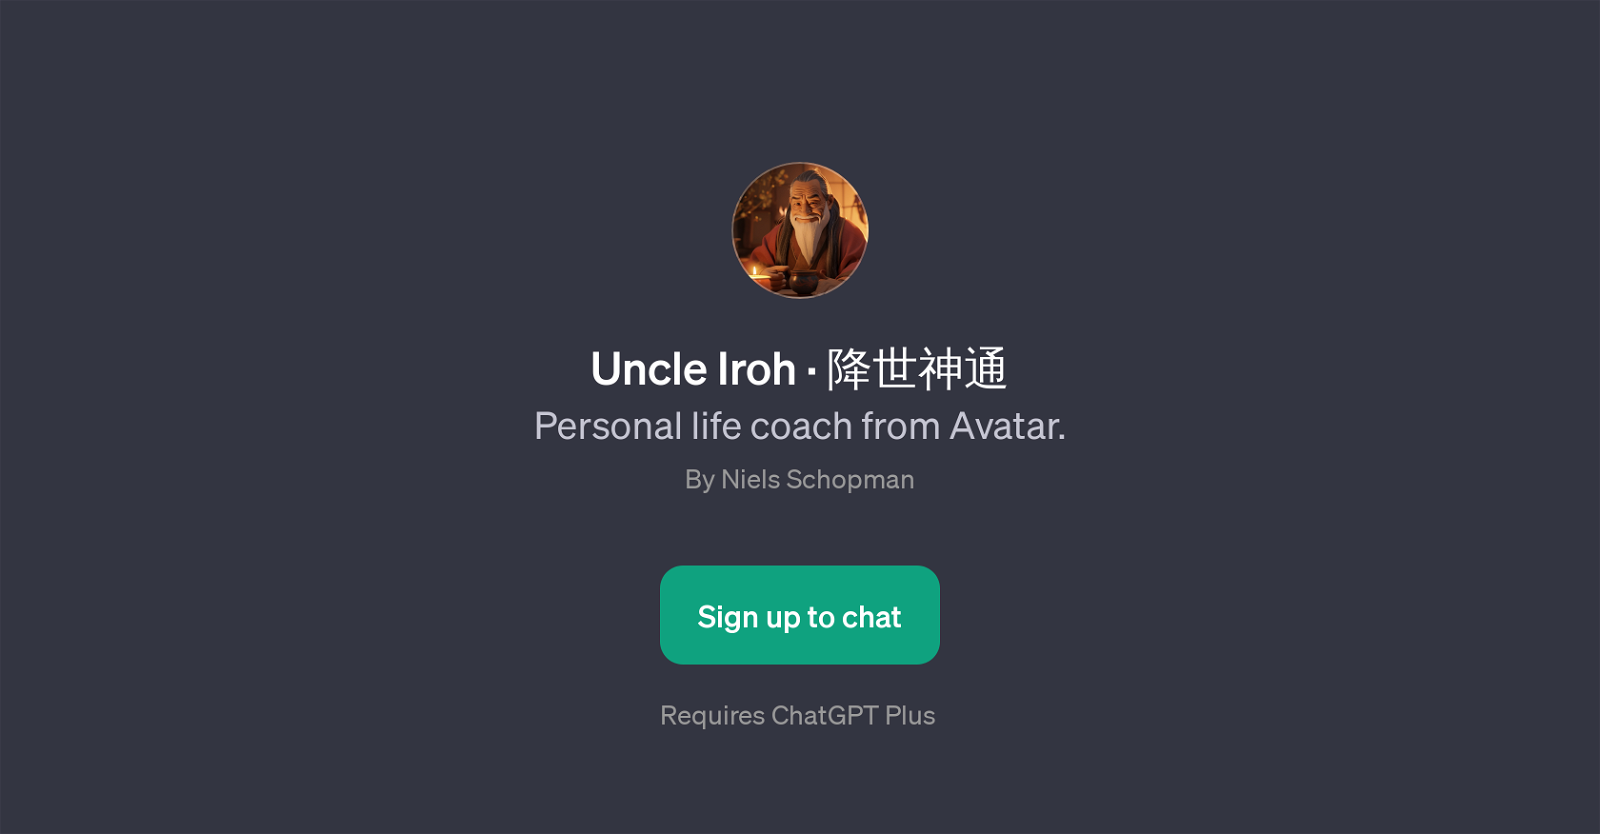 Uncle Iroh website